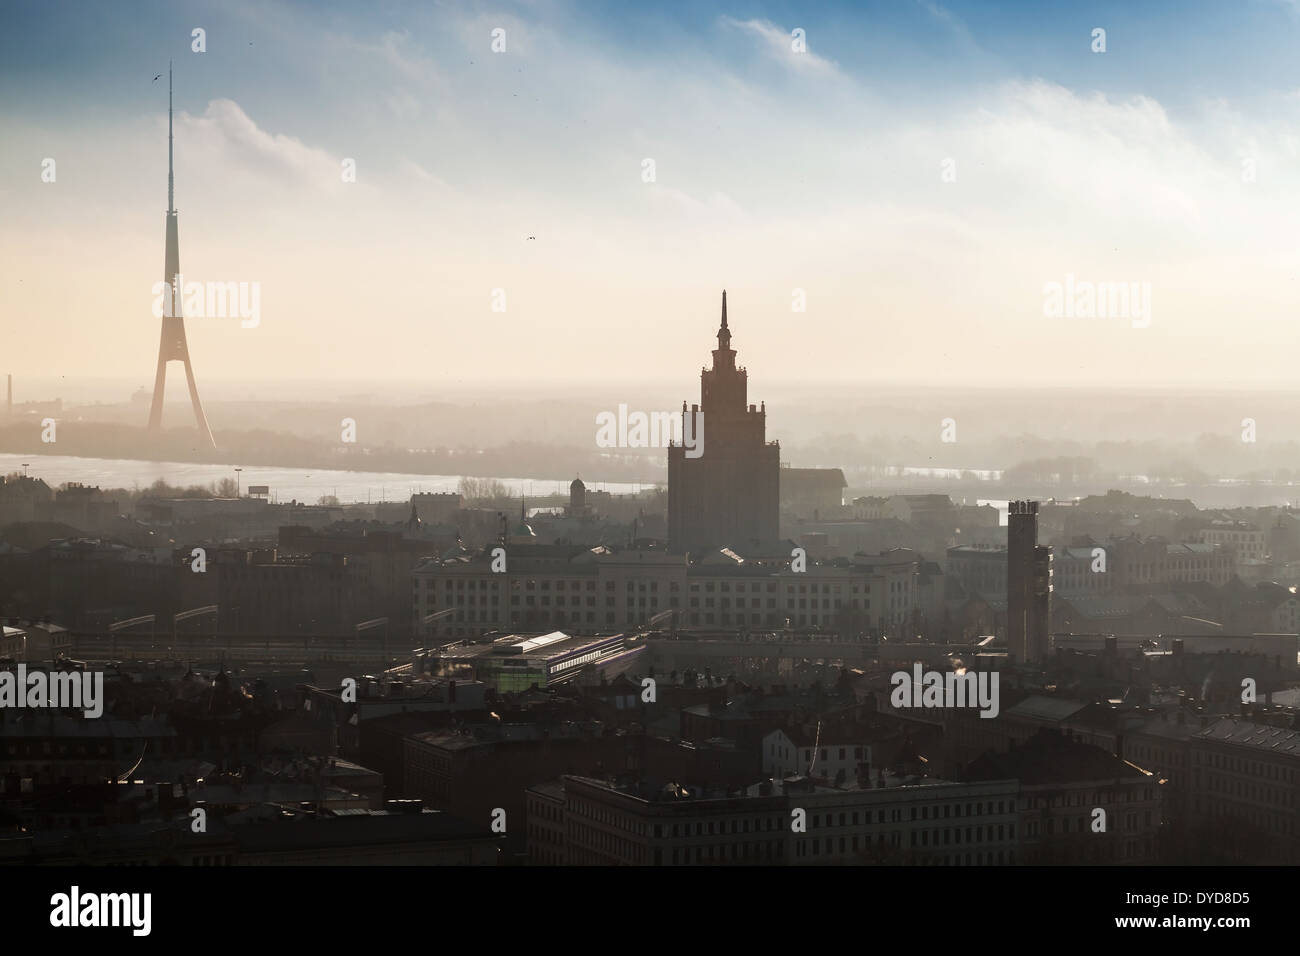 RIGA, LETONIA - Diciembre 31, 2013: panorama del paisaje urbano de la ciudad de Riga con altos casa viva y la torre de televisión en la niebla Foto de stock